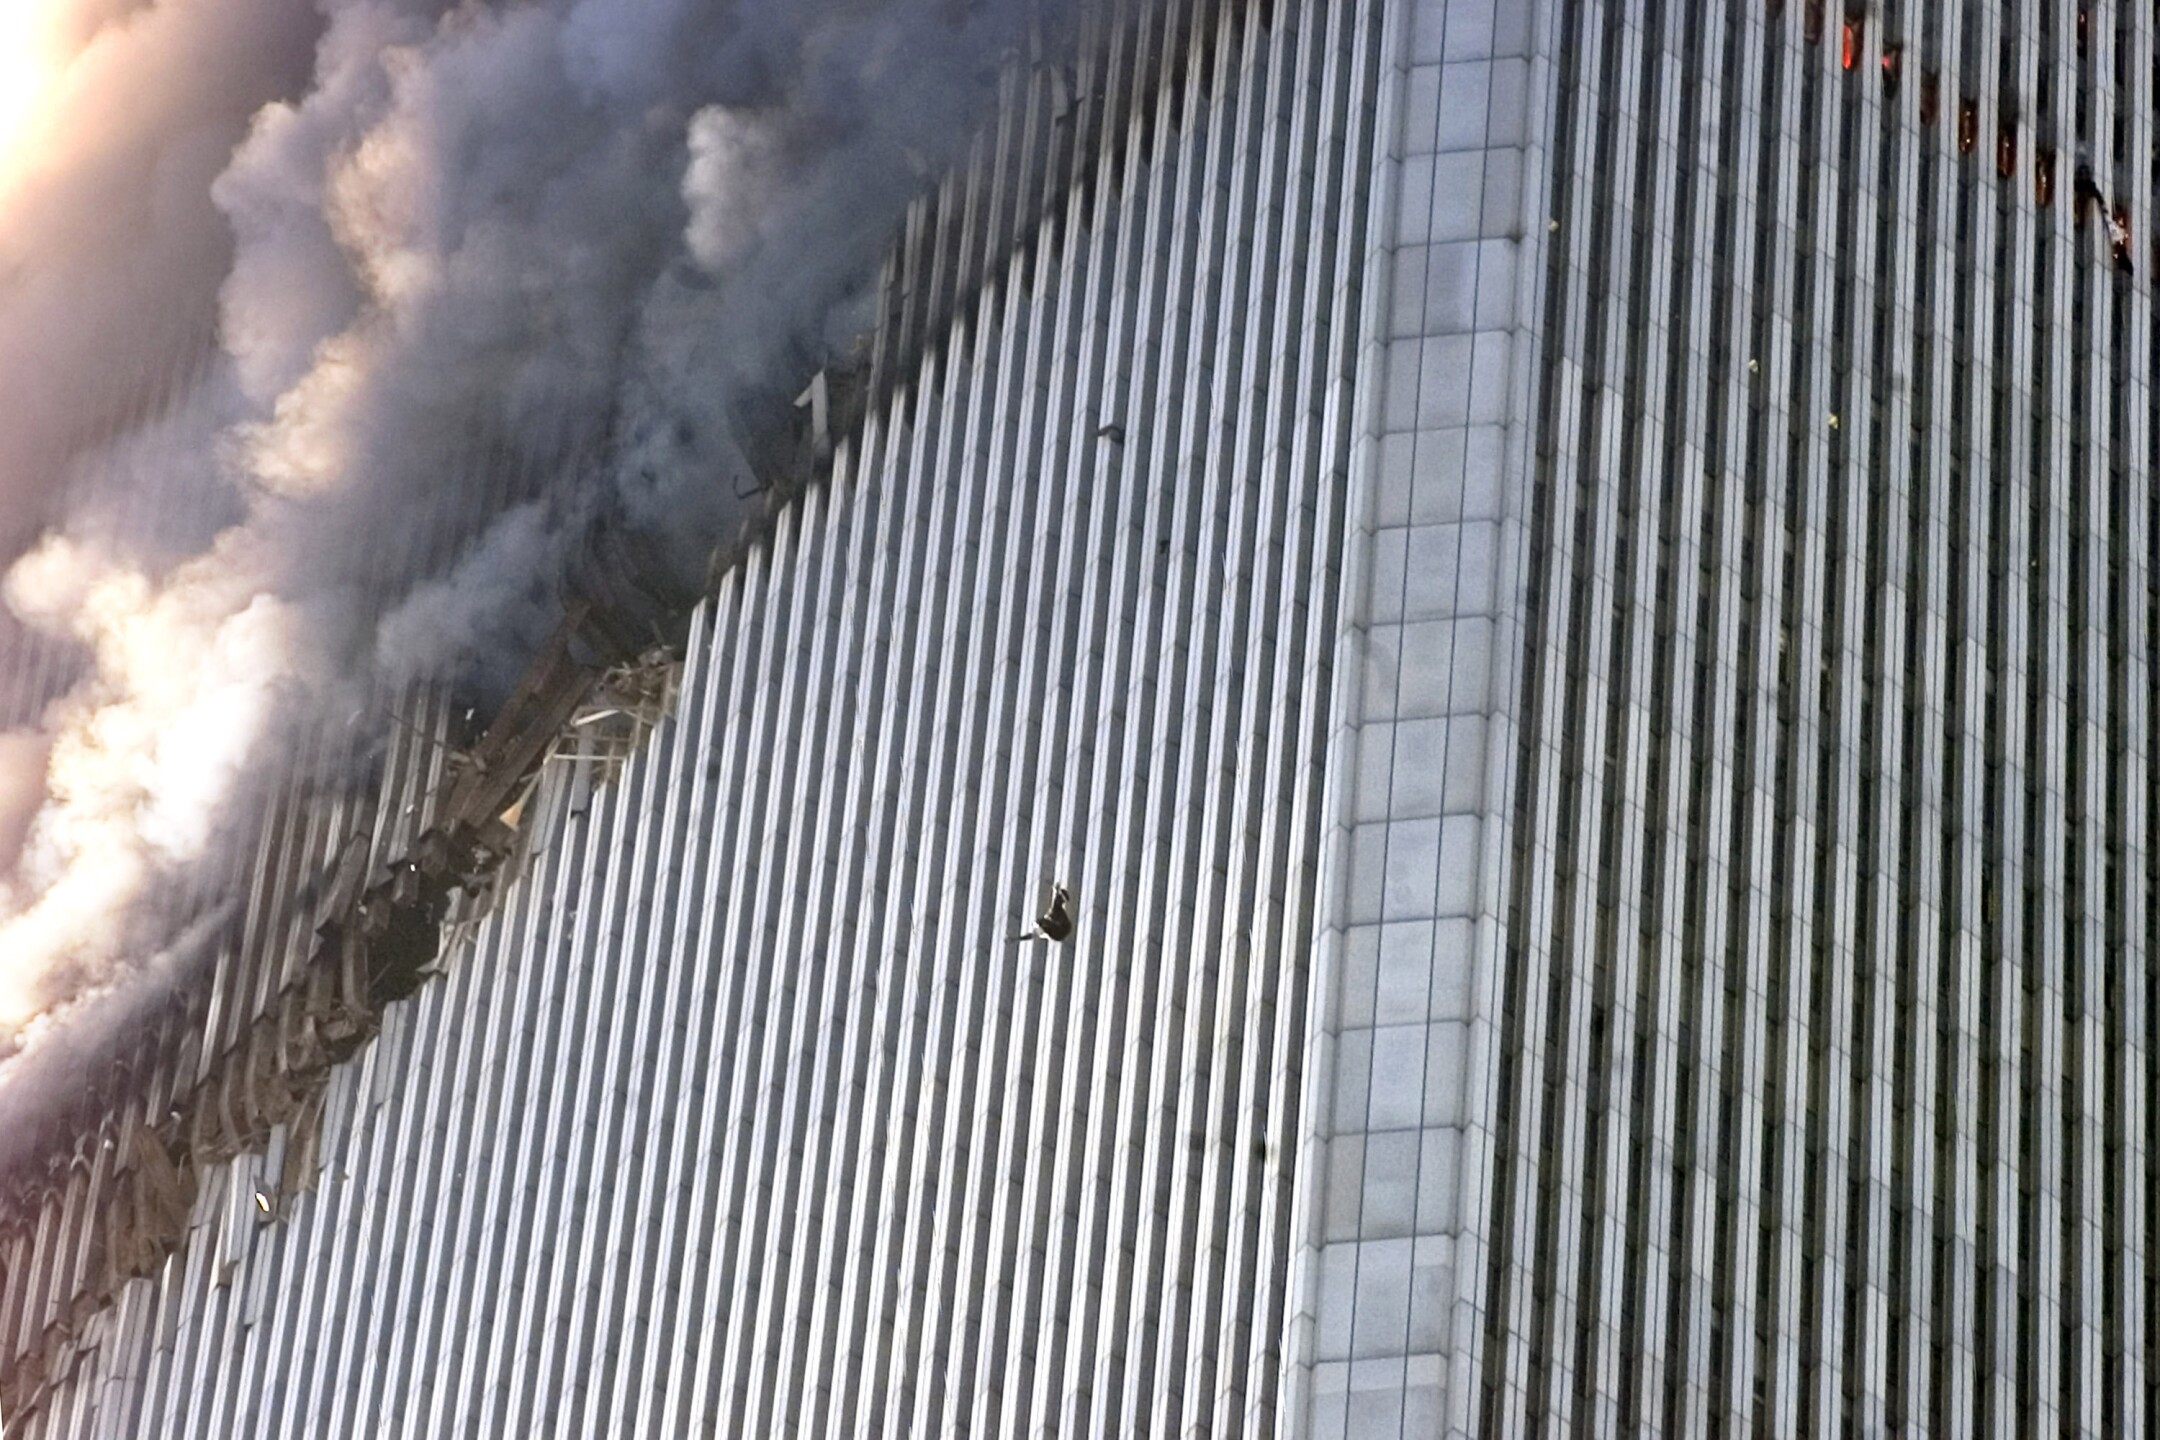 9 11 game. Башни ВТЦ 11 сентября 2001. Северная башня ВТЦ 11 сентября. ВТЦ Нью-Йорк башни Близнецы 2001. Всемирный торговый центр в Нью-Йорке 11 сентября.